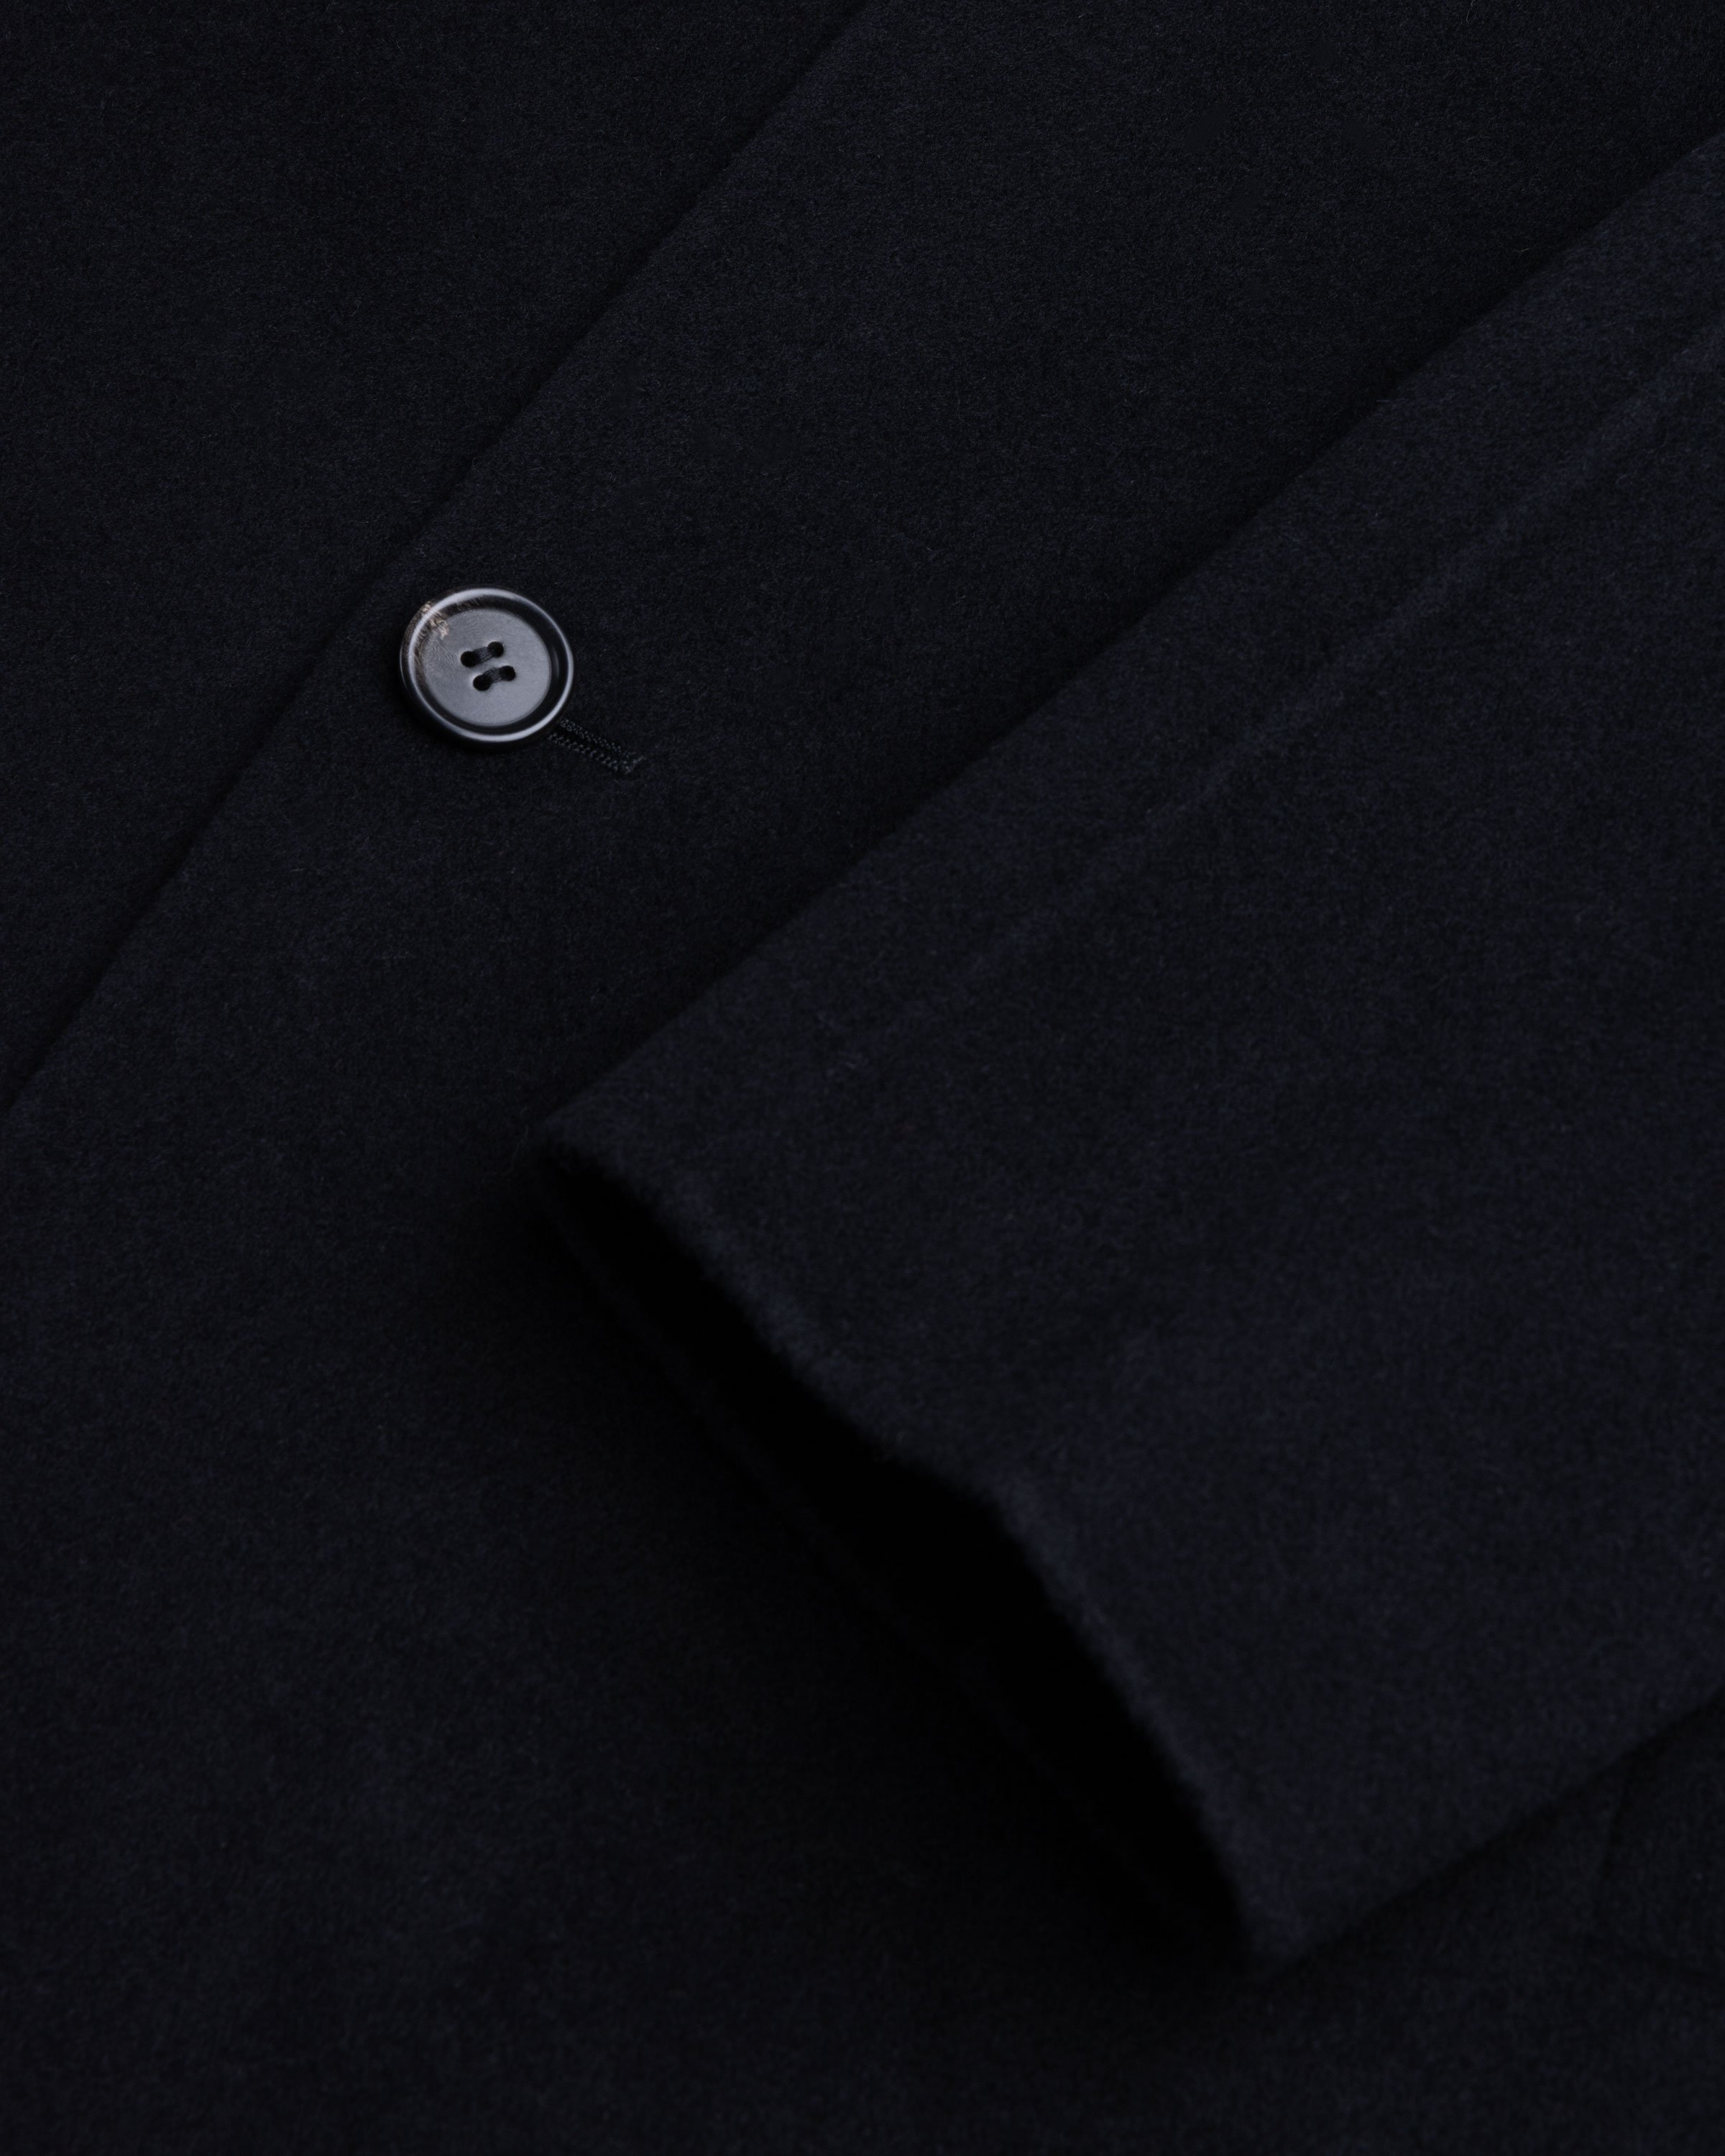 Acne Studios - Single-Breasted Coat Black - Clothing - Black - Image 5